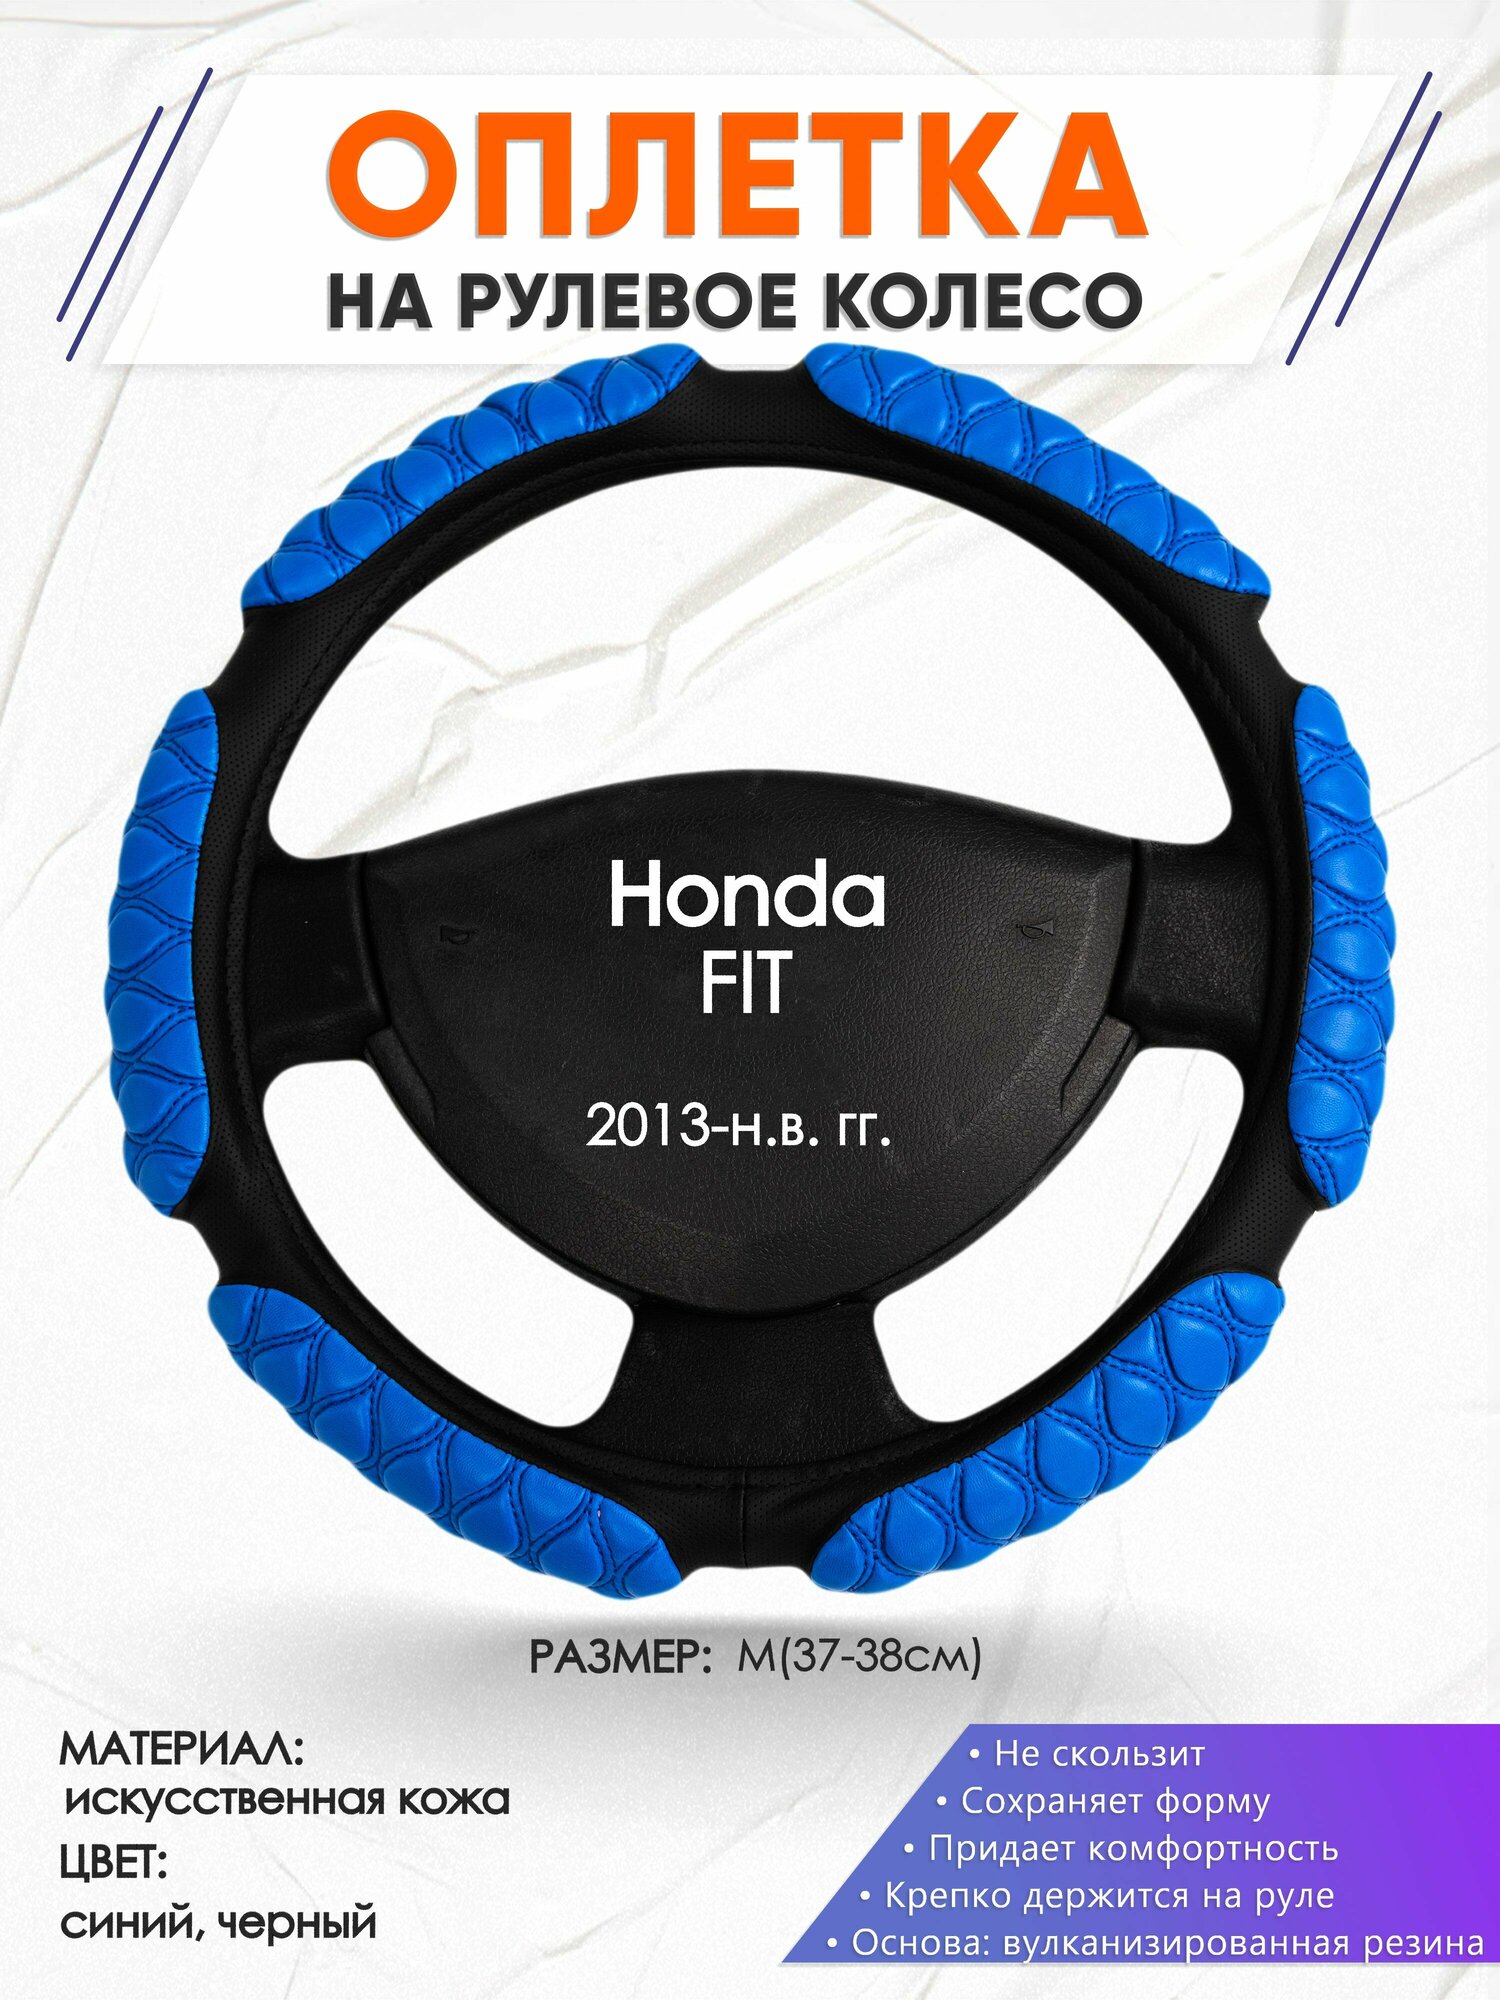 Оплетка наруль для Honda FIT(Хонда Фит) 2013-н. в. годов выпуска размер M(37-38см) Искусственная кожа 07